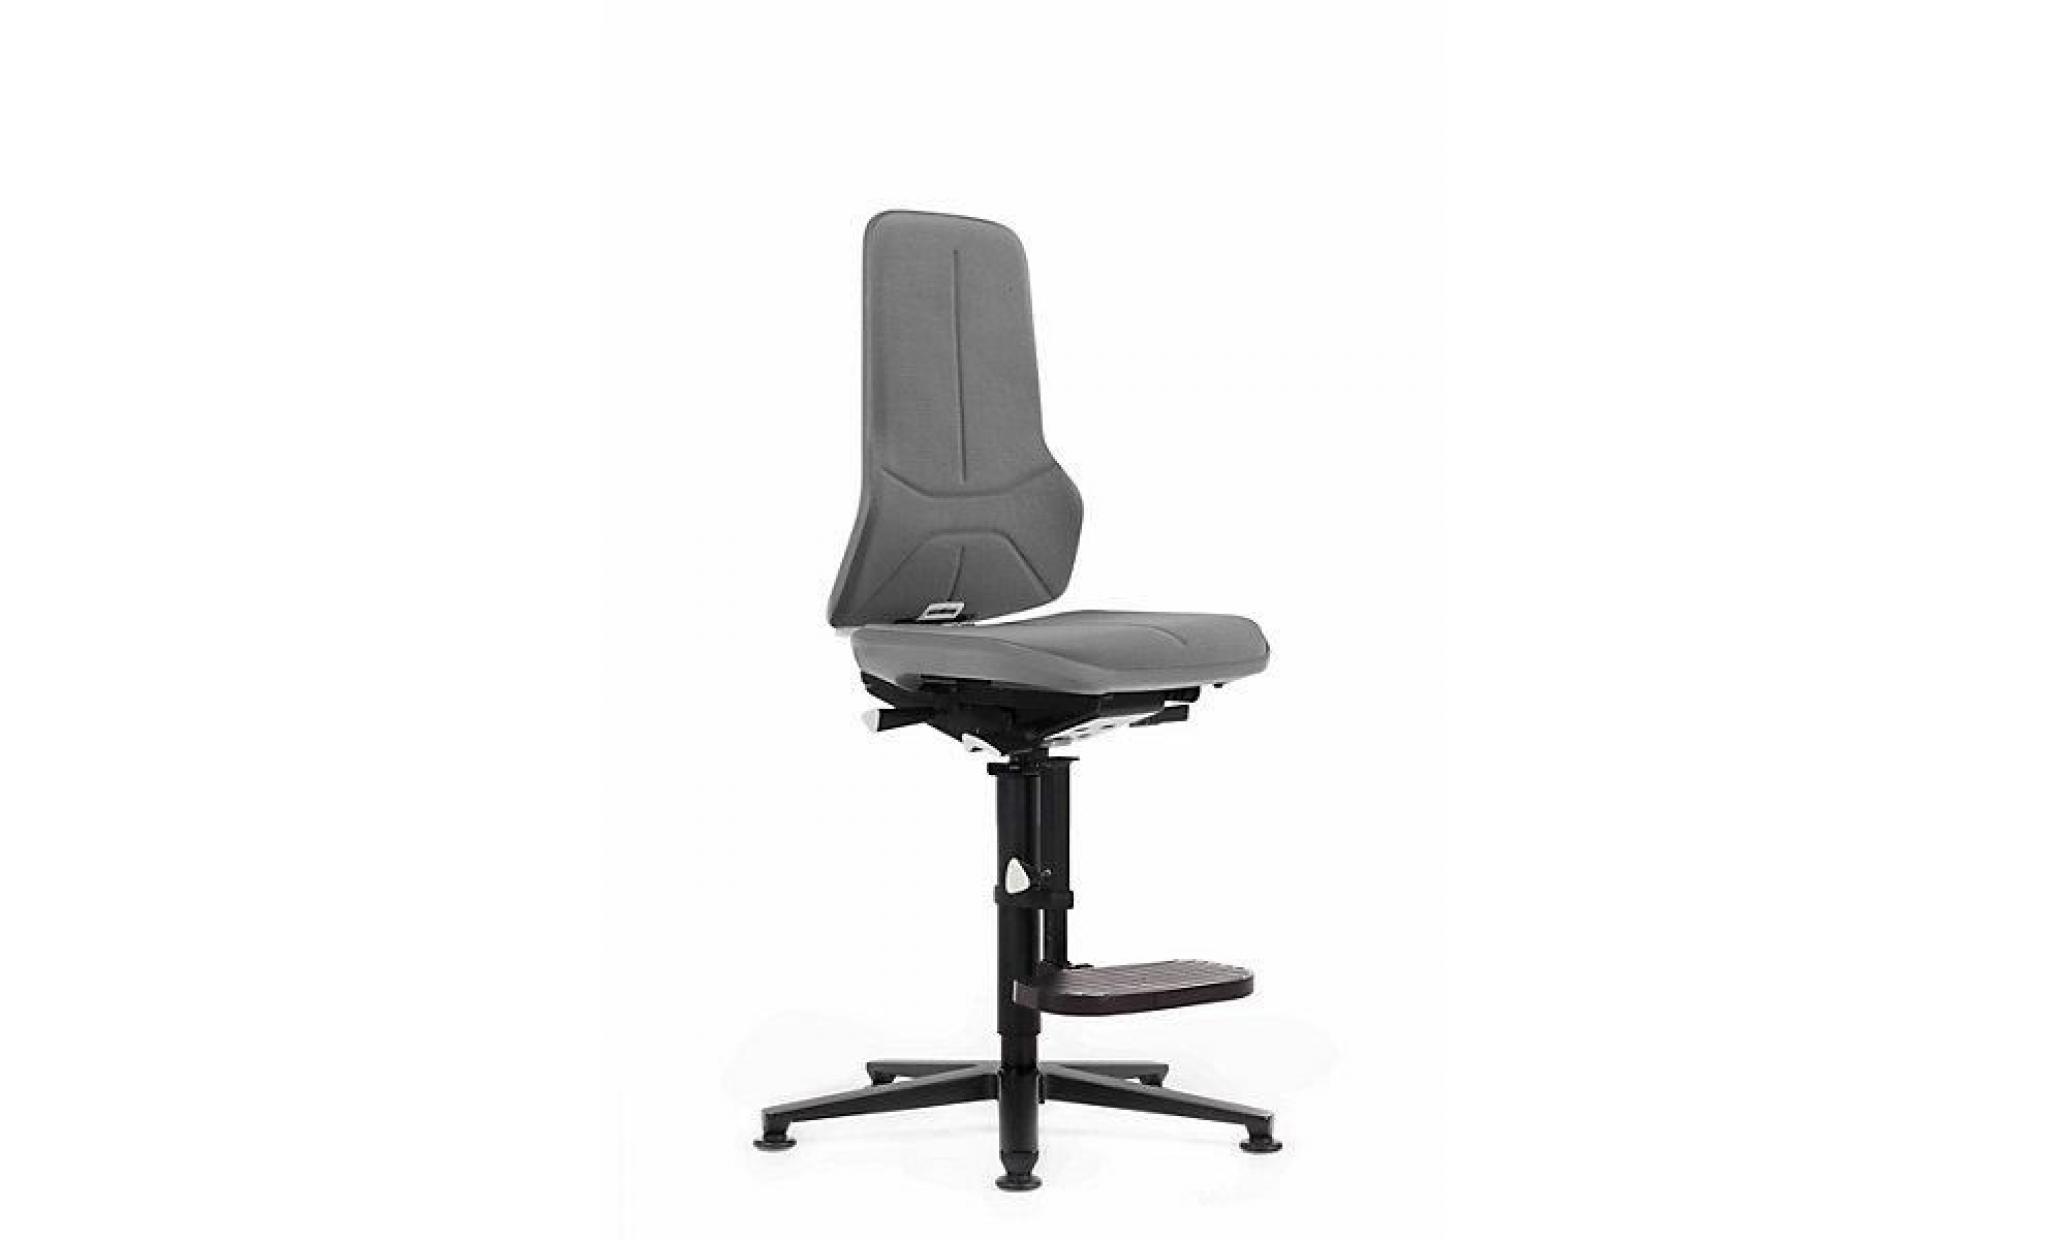 bimos siège d'atelier à piétement en aluminium   avec patins et repose pieds supertec, bande flexible grise   chaise chaise